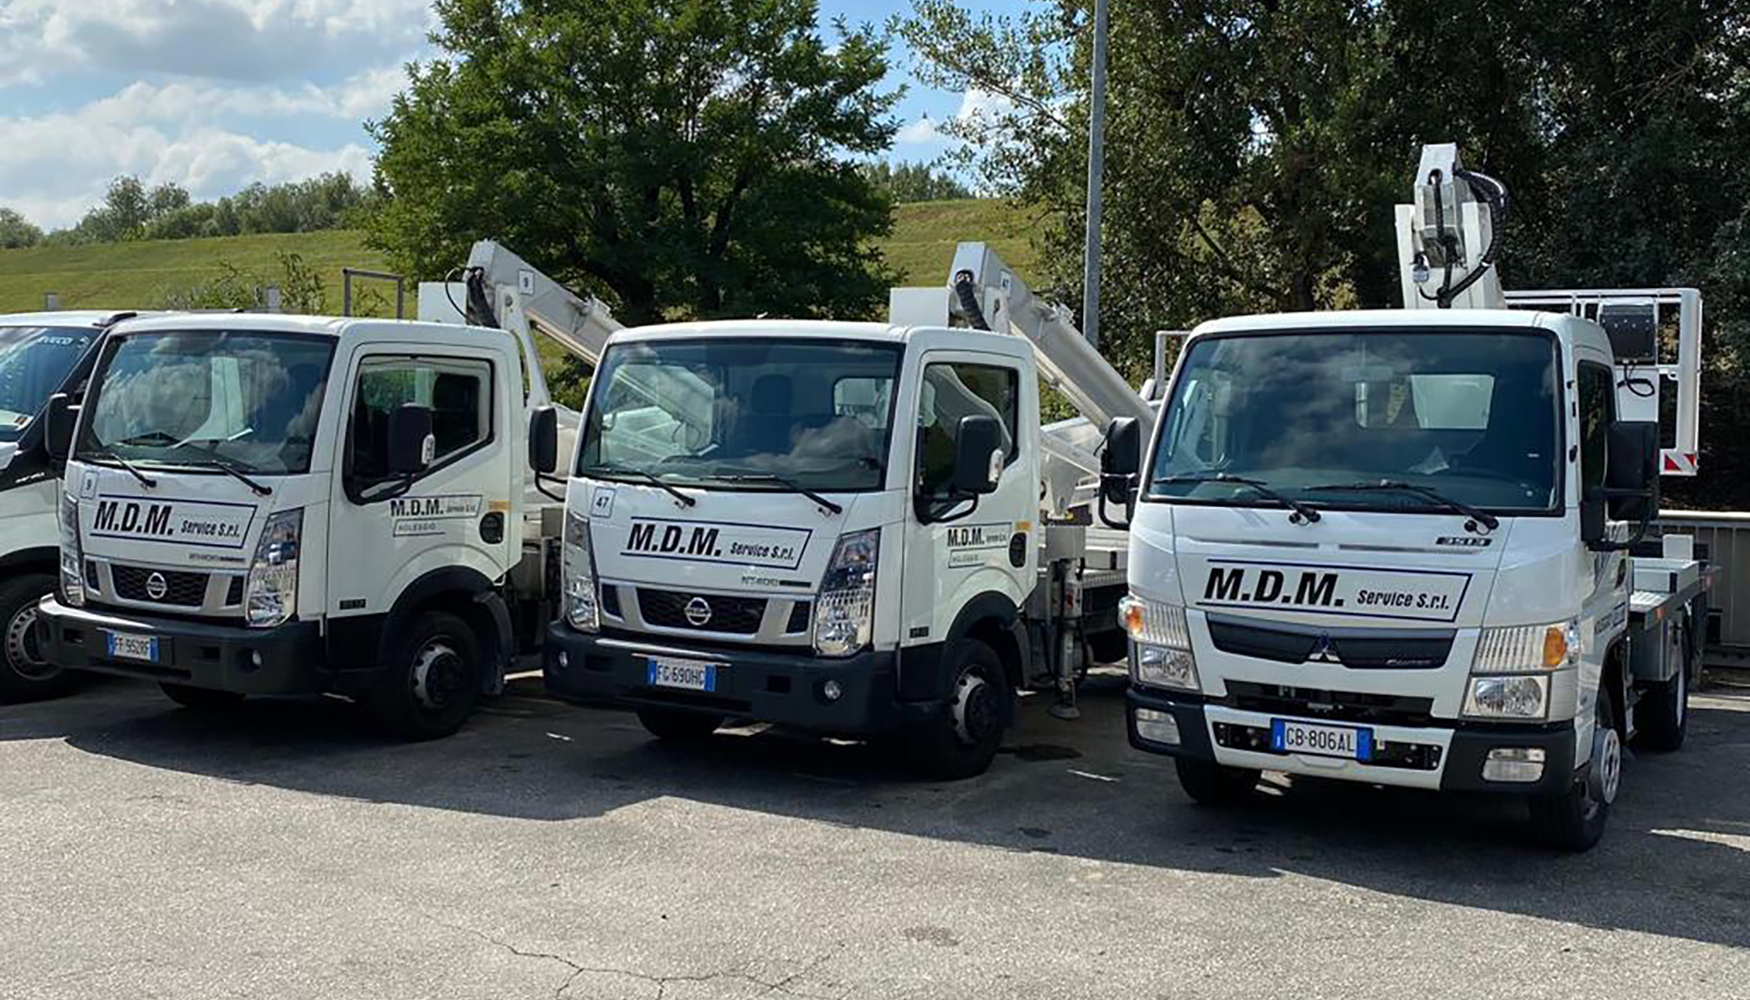 M.D.M. Service Noleggio cuenta ya en su flota con varios modelos de plataformas Multitel Pagliero